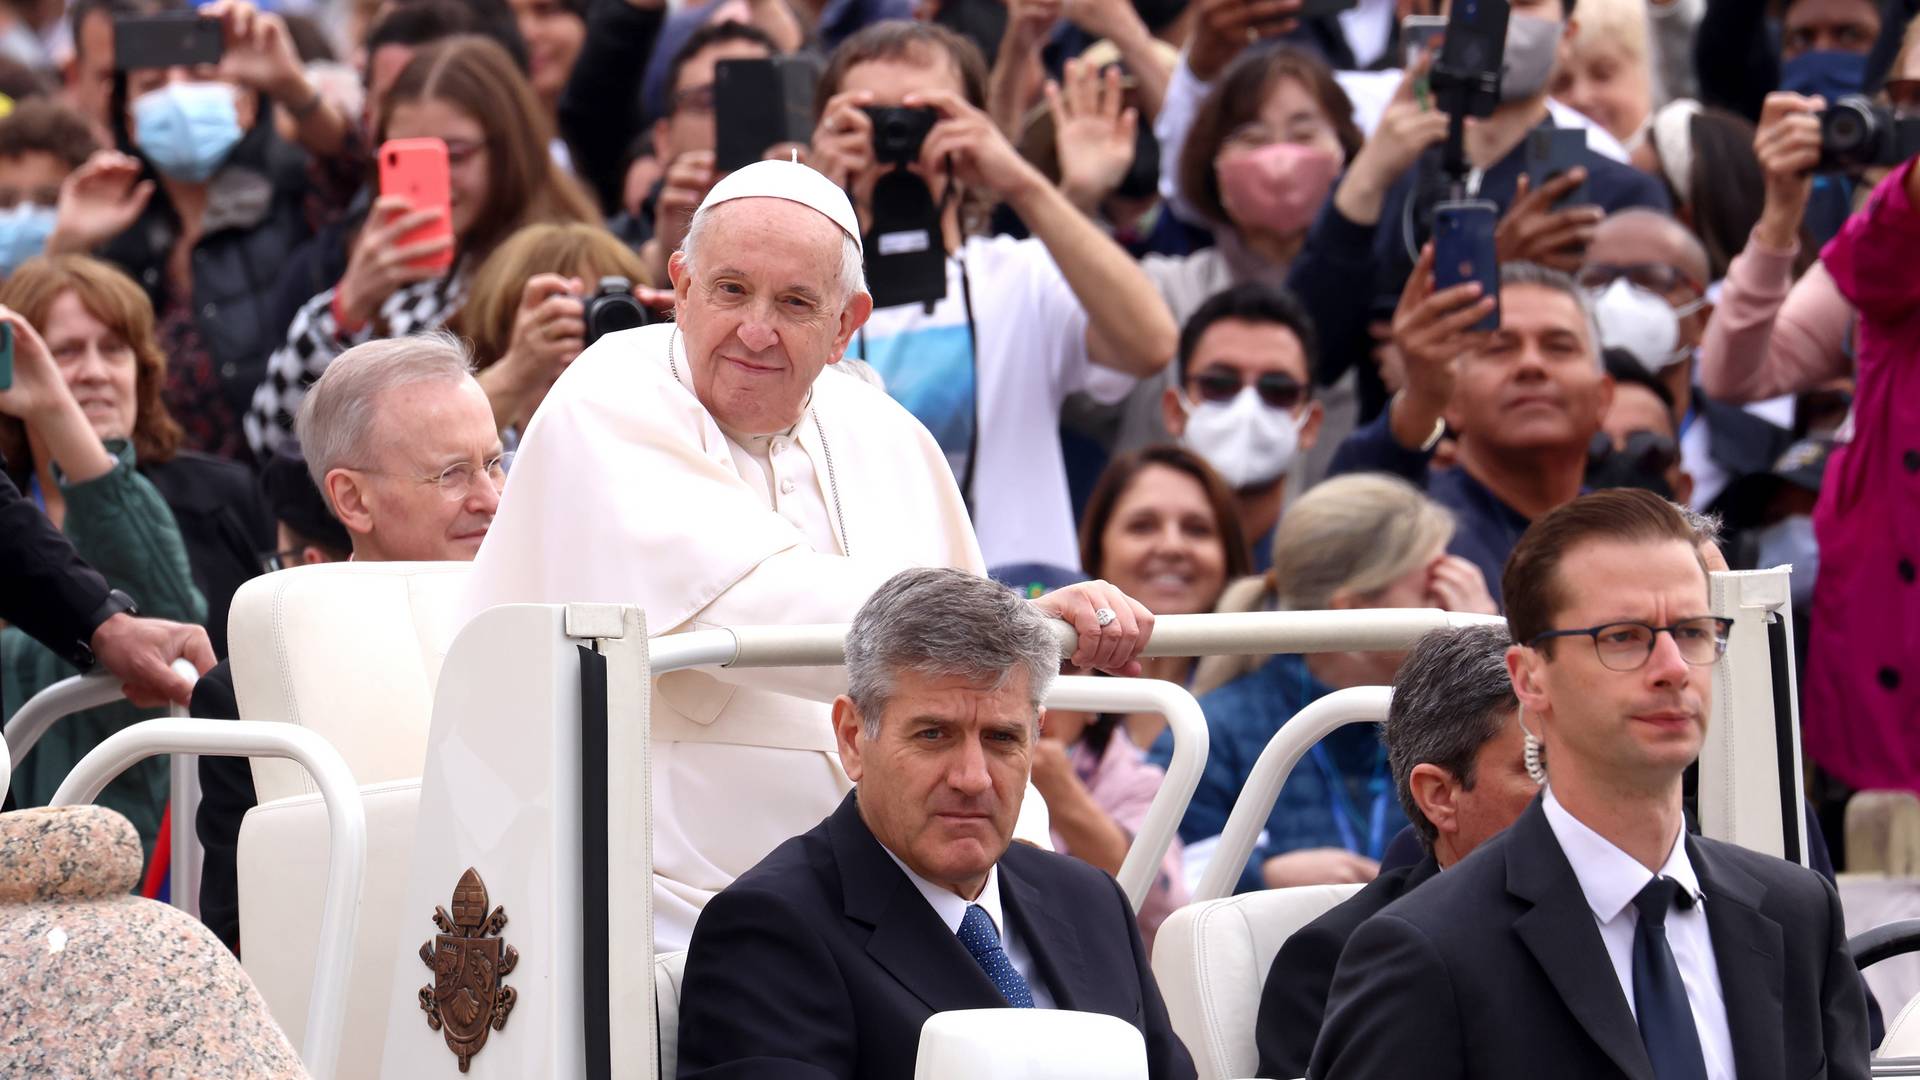 Papież często "abdykuje", rezygnując z wyrażenia moralnej opinii na tematy istotne